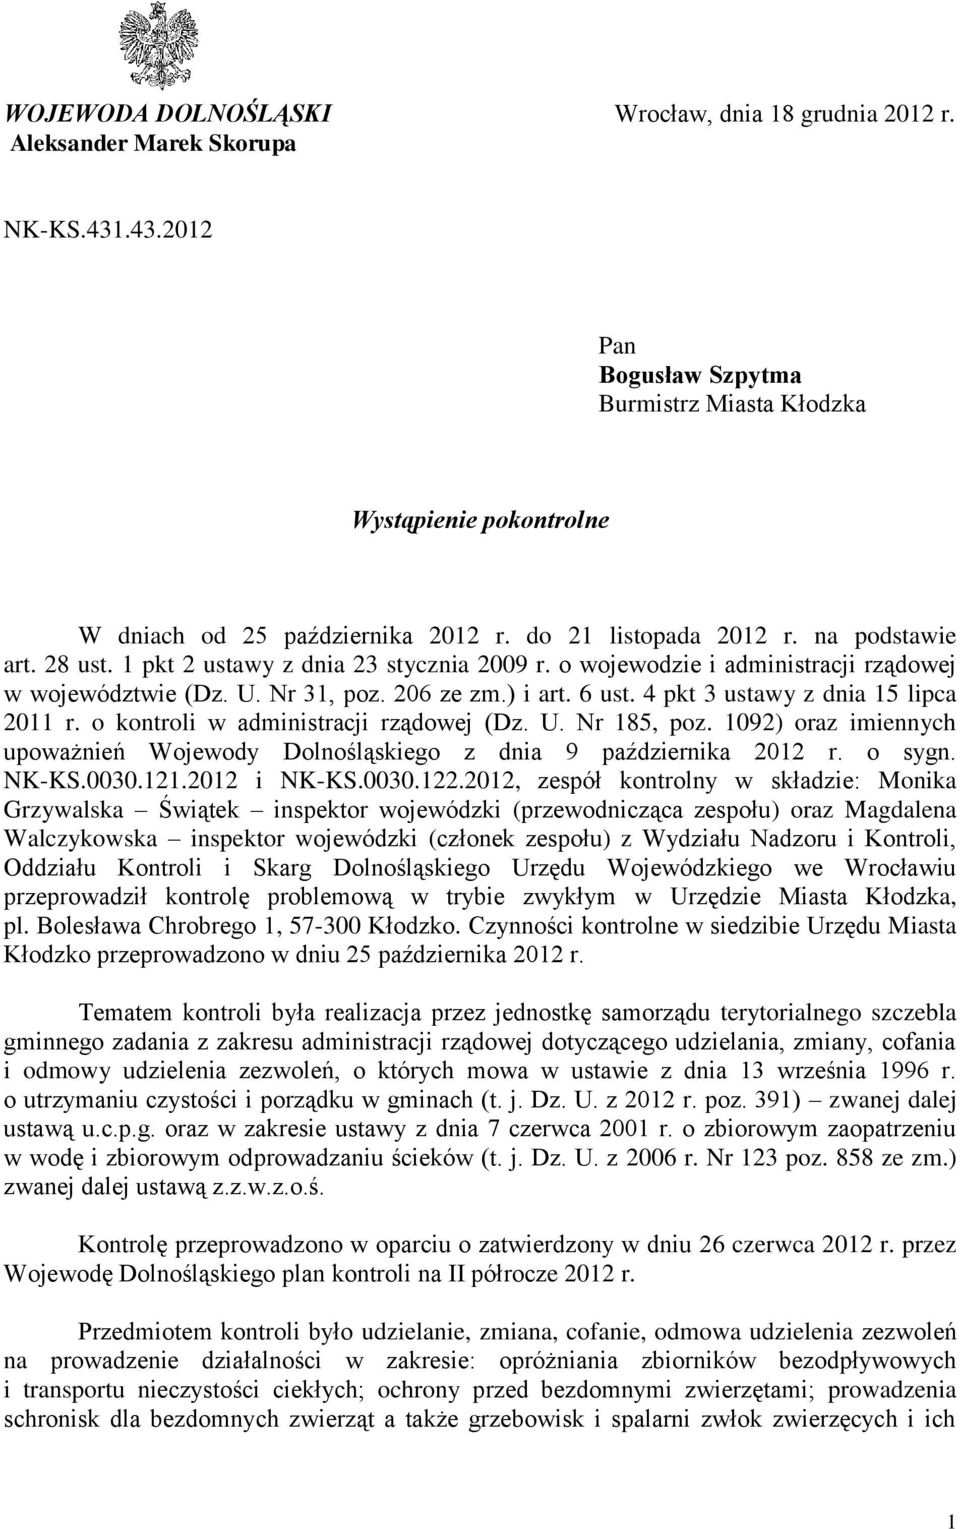 4 pkt 3 ustawy z dnia 15 lipca 2011 r. o kontroli w administracji rządowej (Dz. U. Nr 185, poz. 1092) oraz imiennych upoważnień Wojewody Dolnośląskiego z dnia 9 października 2012 r. o sygn. NK-KS.